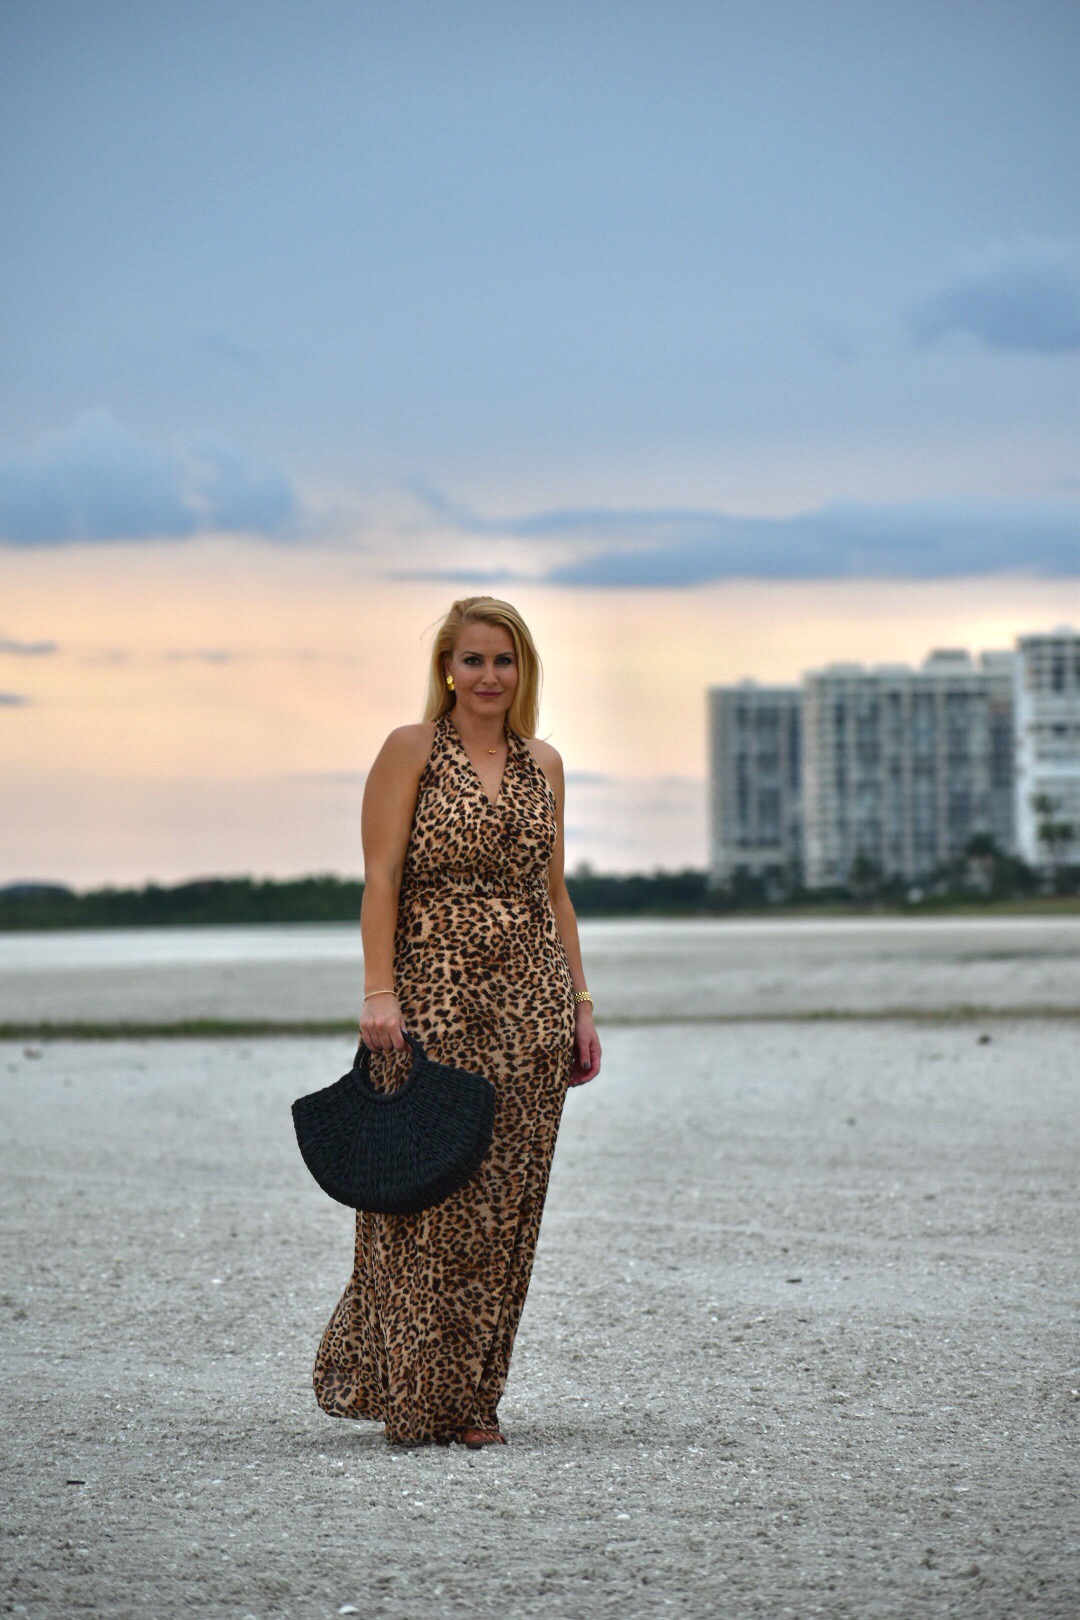 Leopard Print, Leopard Dress, Chetta B Leopard Print Dress, Gorjana Jewelry and Black Straw Tote in Marco Island Florida